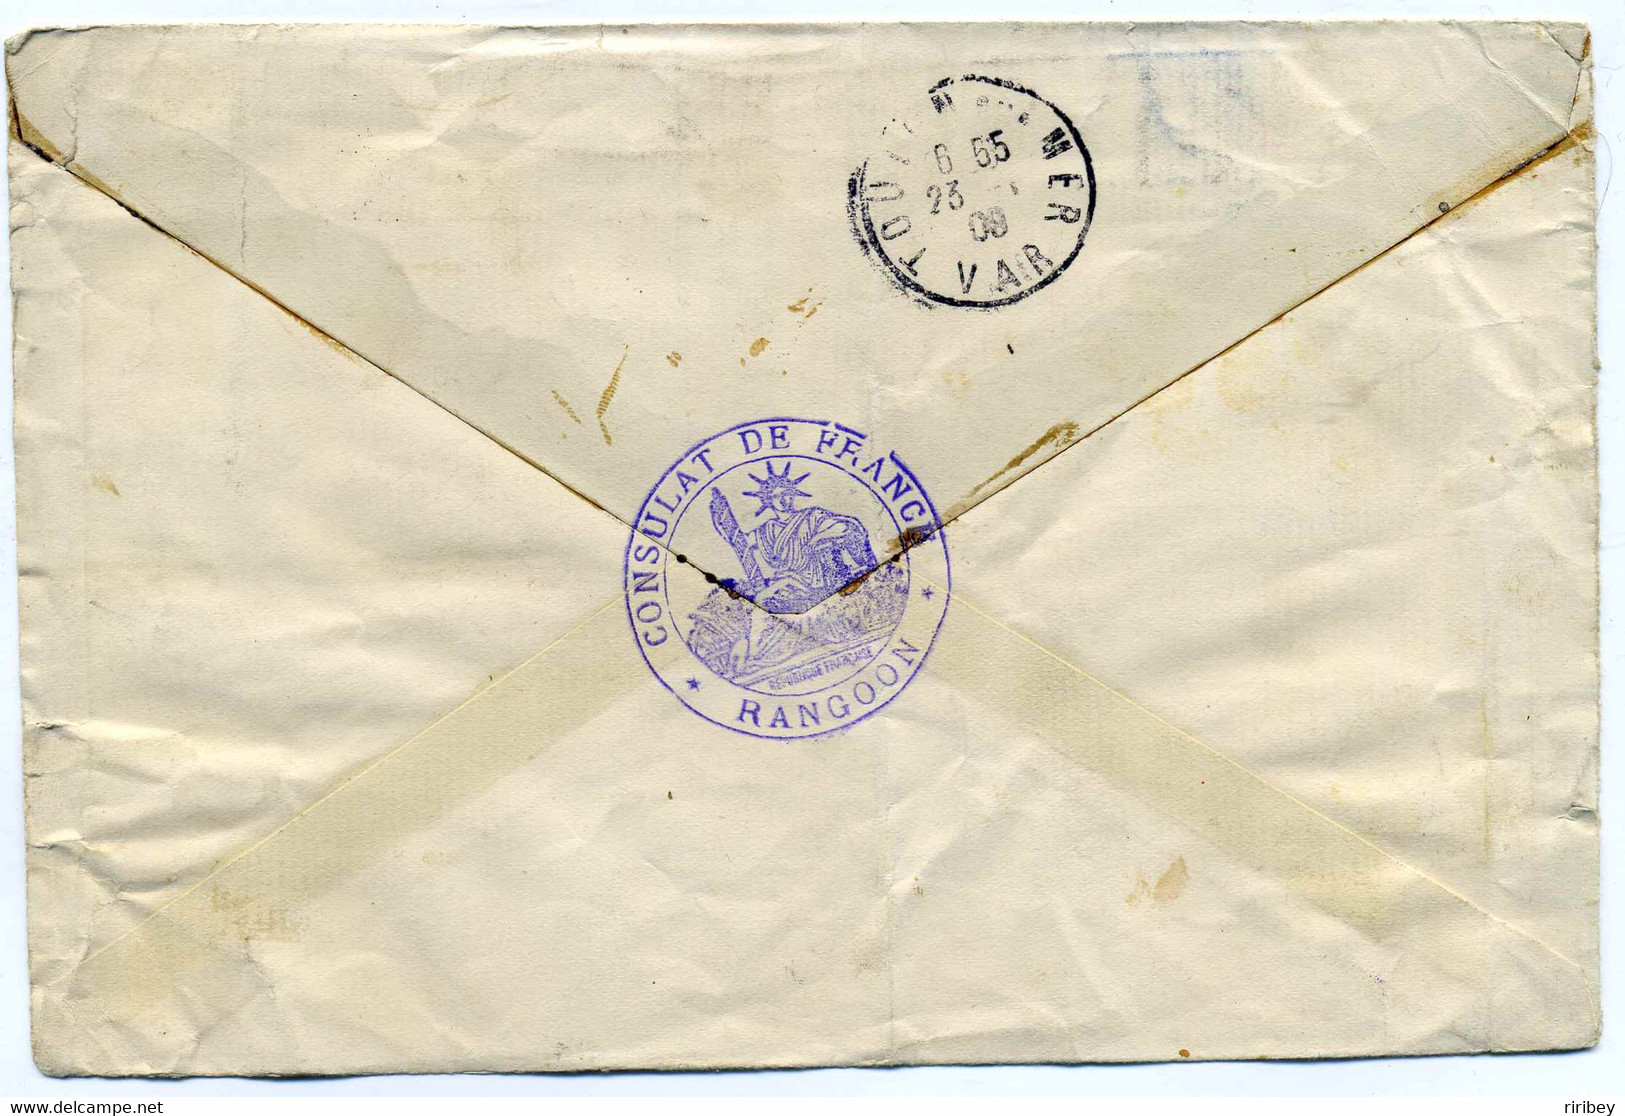 Consulat De France En Birmanie / TP Indes Anglaise YT N°58 Et 59 Oblitération RANGOON 1908 / Pour Toulon - Asia (Other)